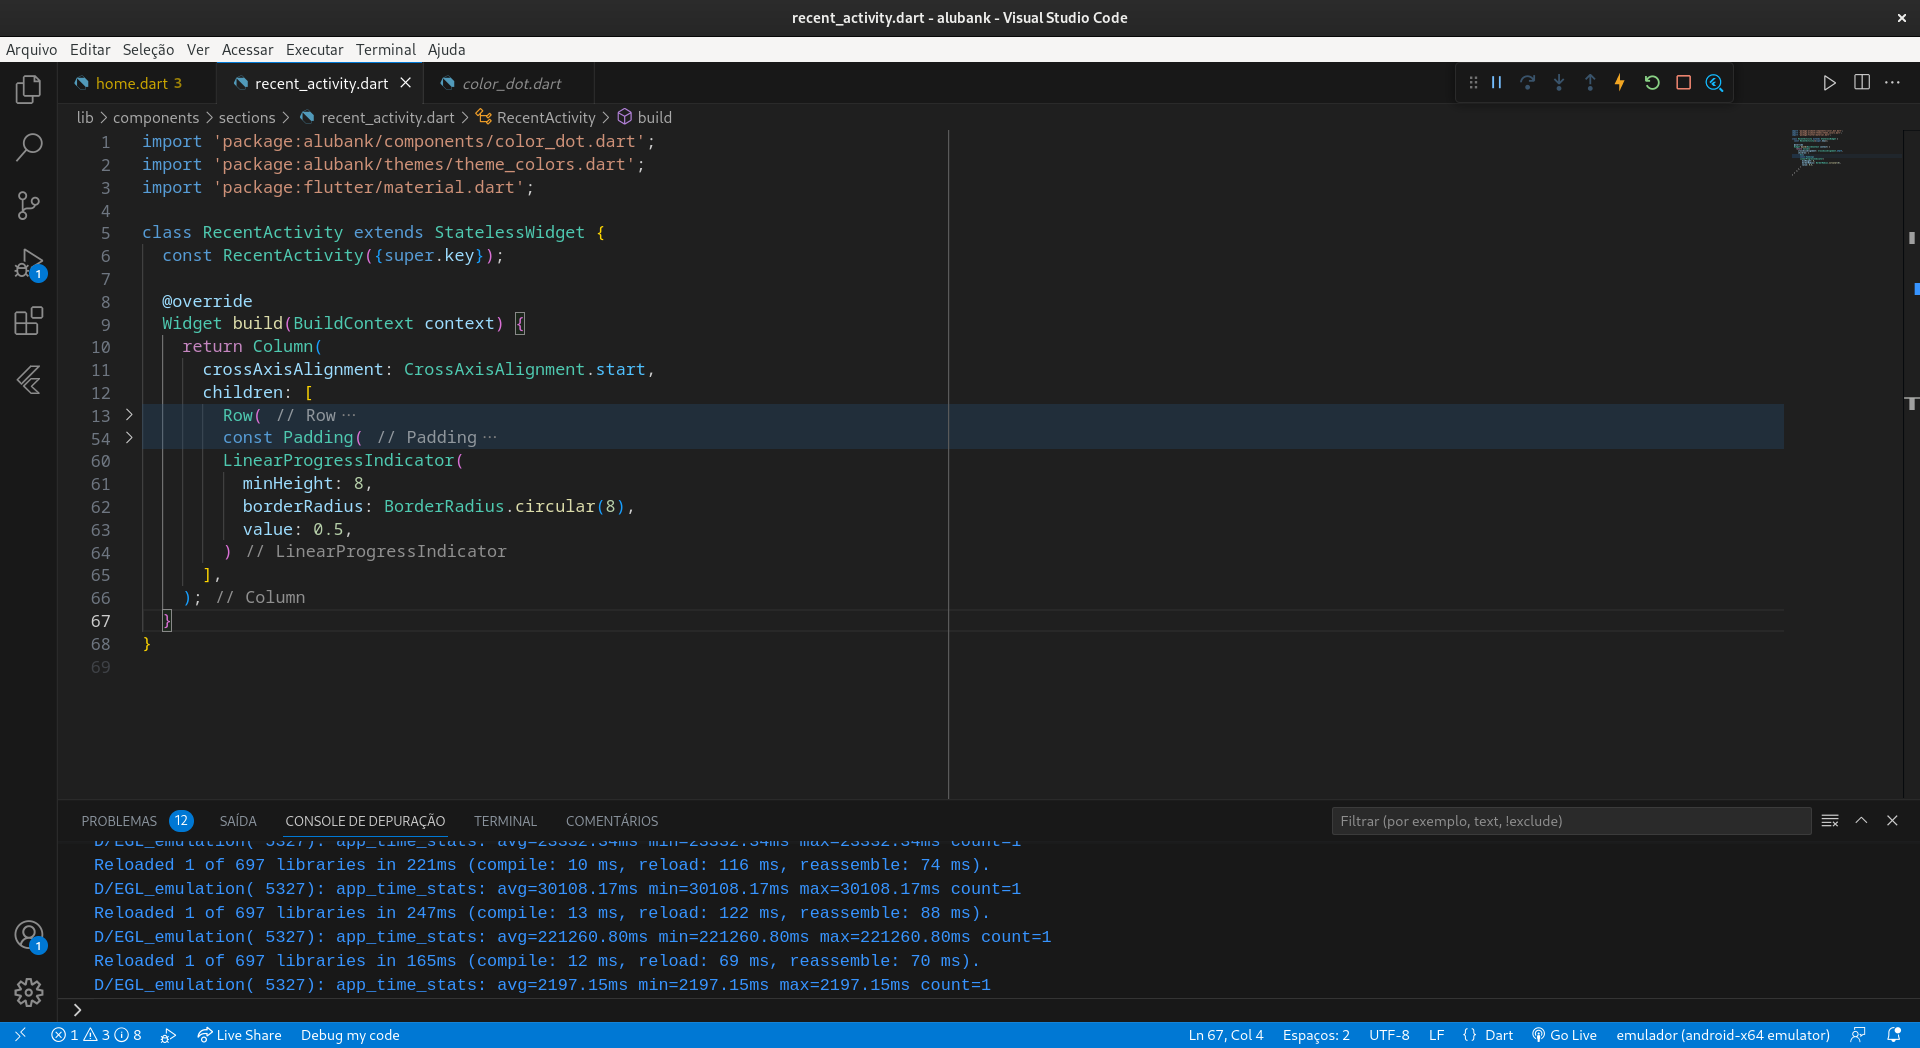 Print da tela do Visual Studio Code demostrando a nova atualização do LinearProgressIndicator 